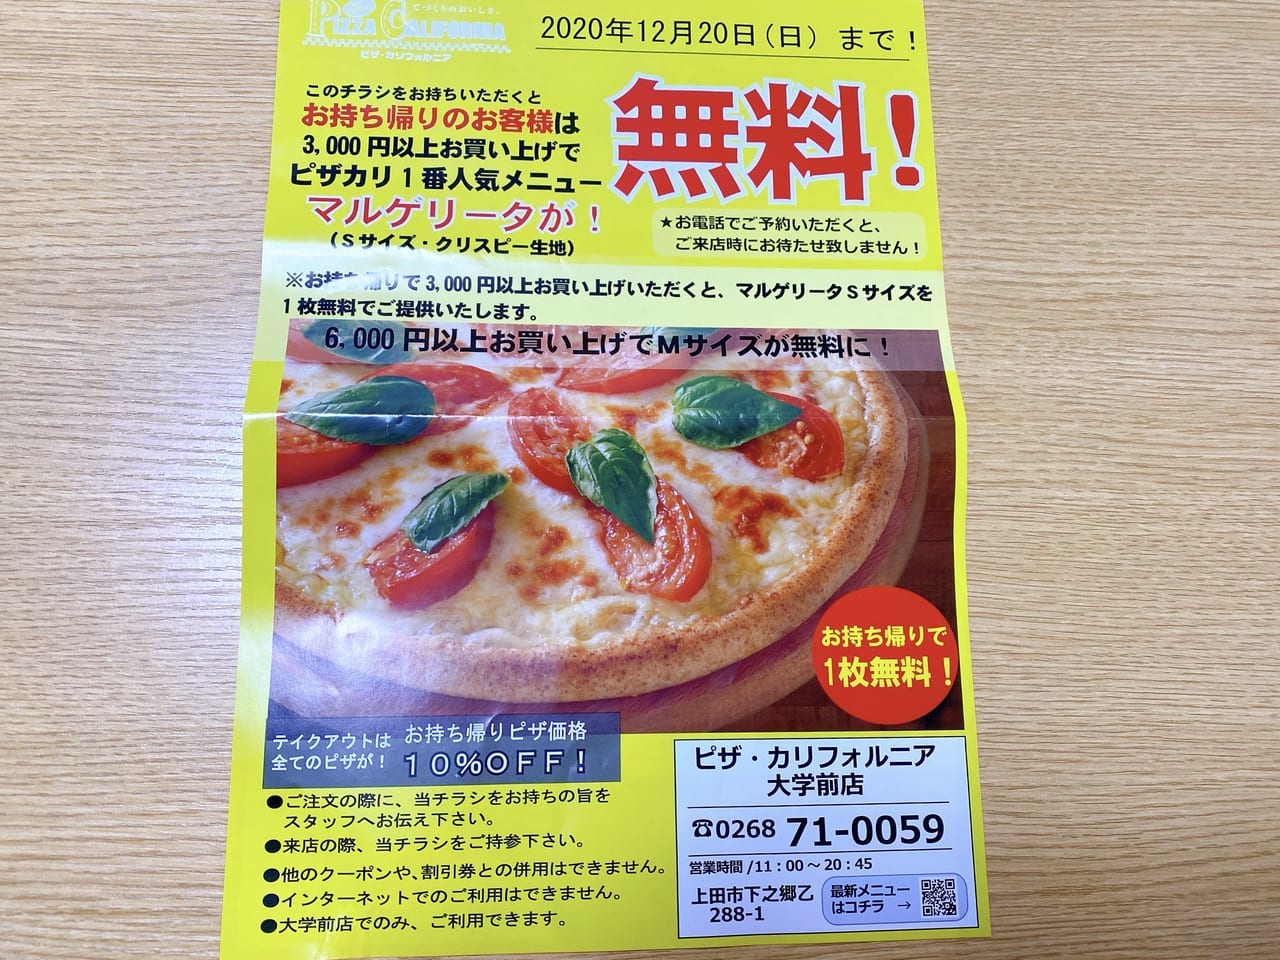 上田市 今年はおうちで ピザ カリフォルニア大学前店 でお持ち帰り3 000円以上買うと 号外net 上田